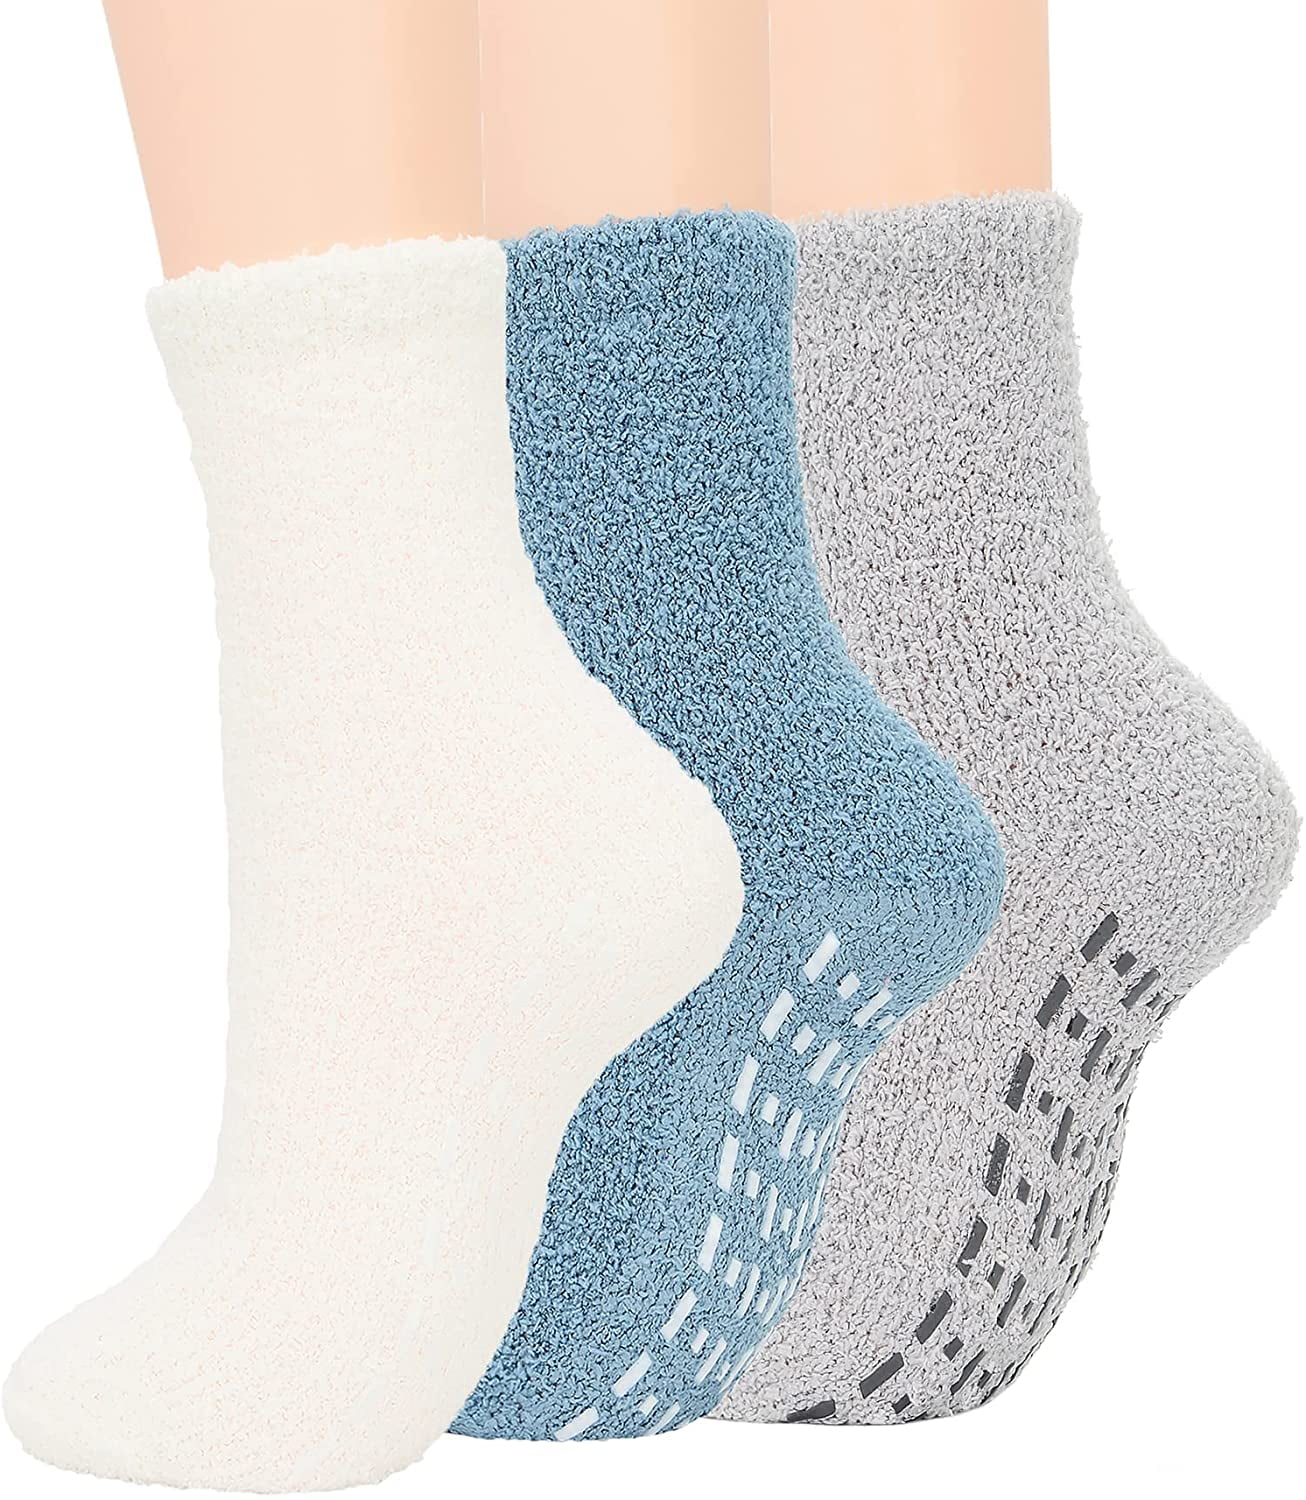 BSWAJIOJIO Fuzzy Grip Socks Socks With Grippers For Women Cozy